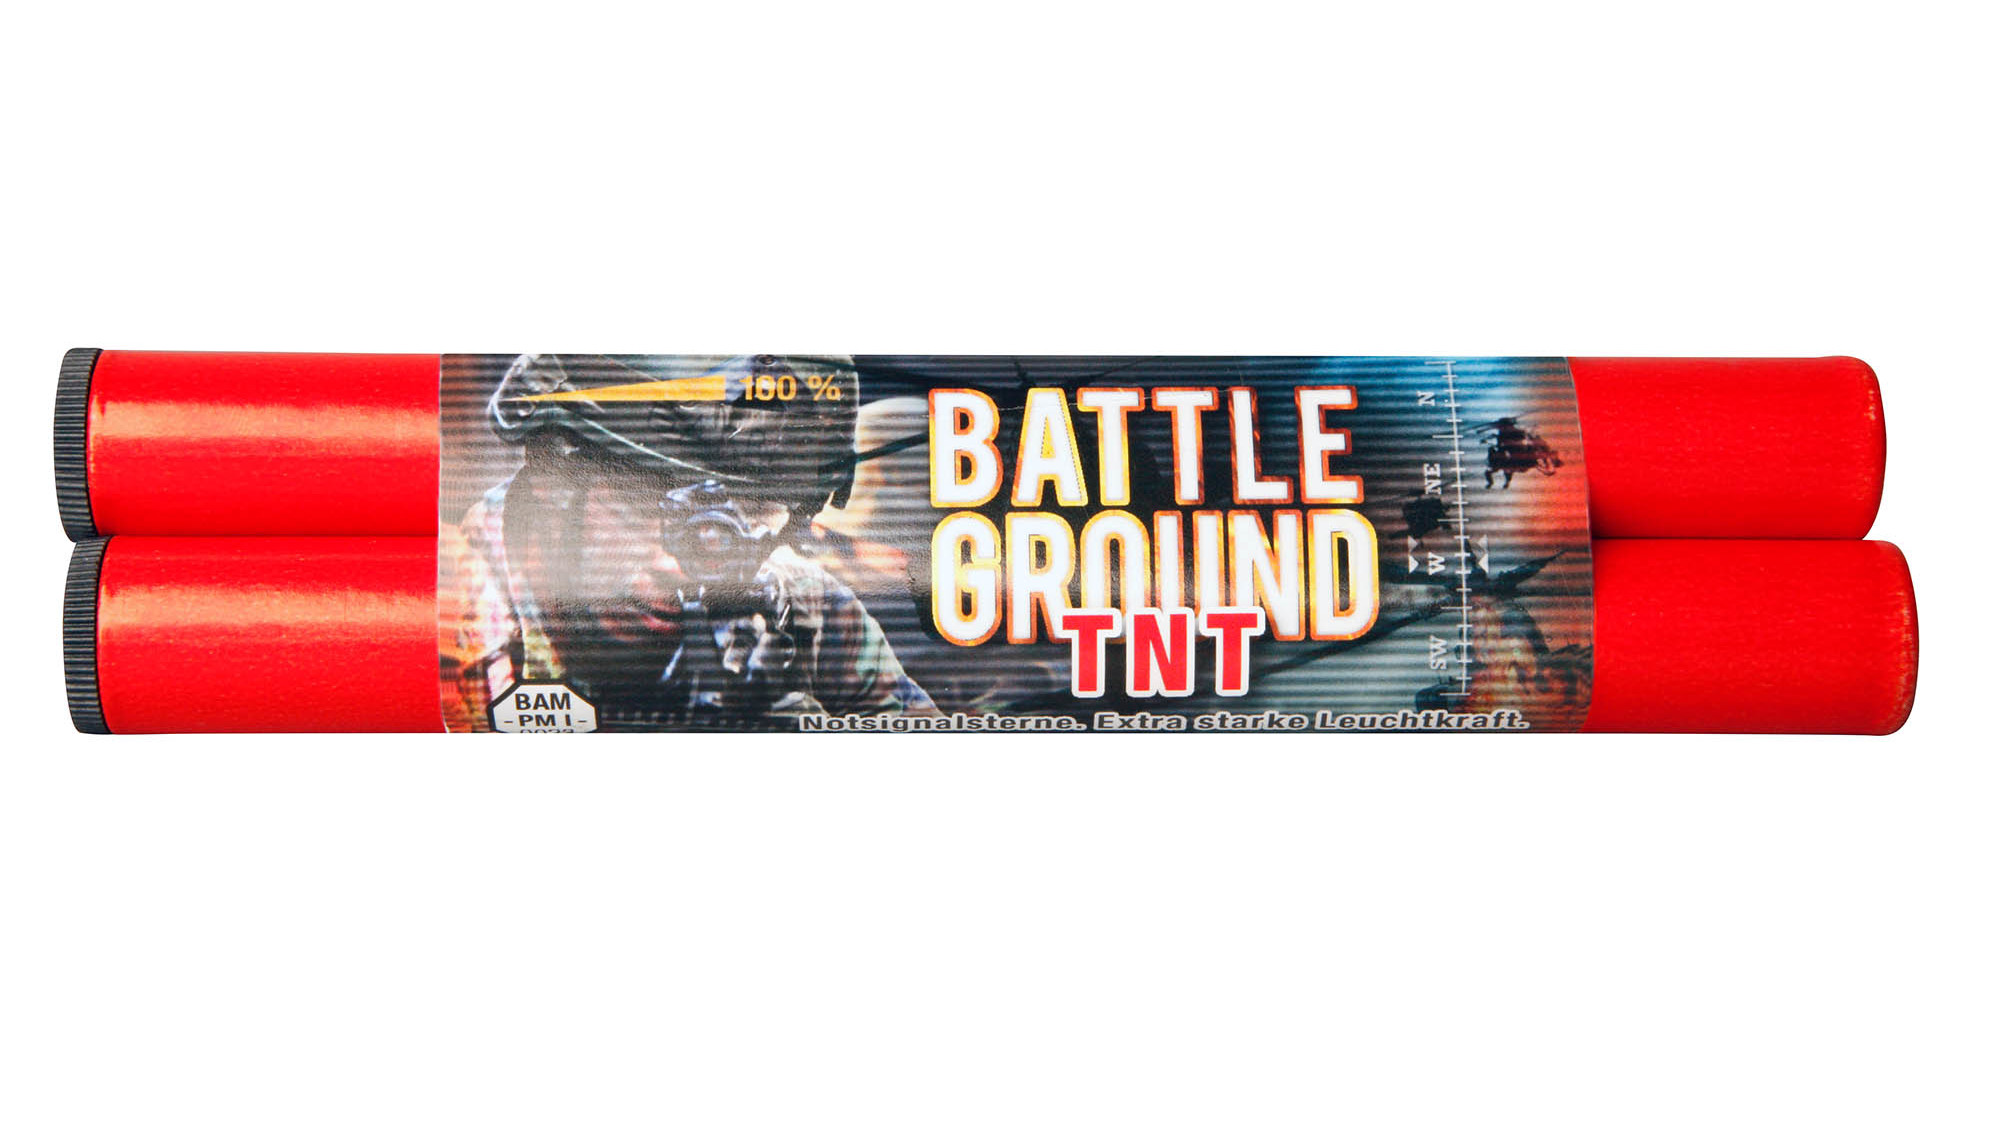 Umarex Battle Ground TNT art.57015509